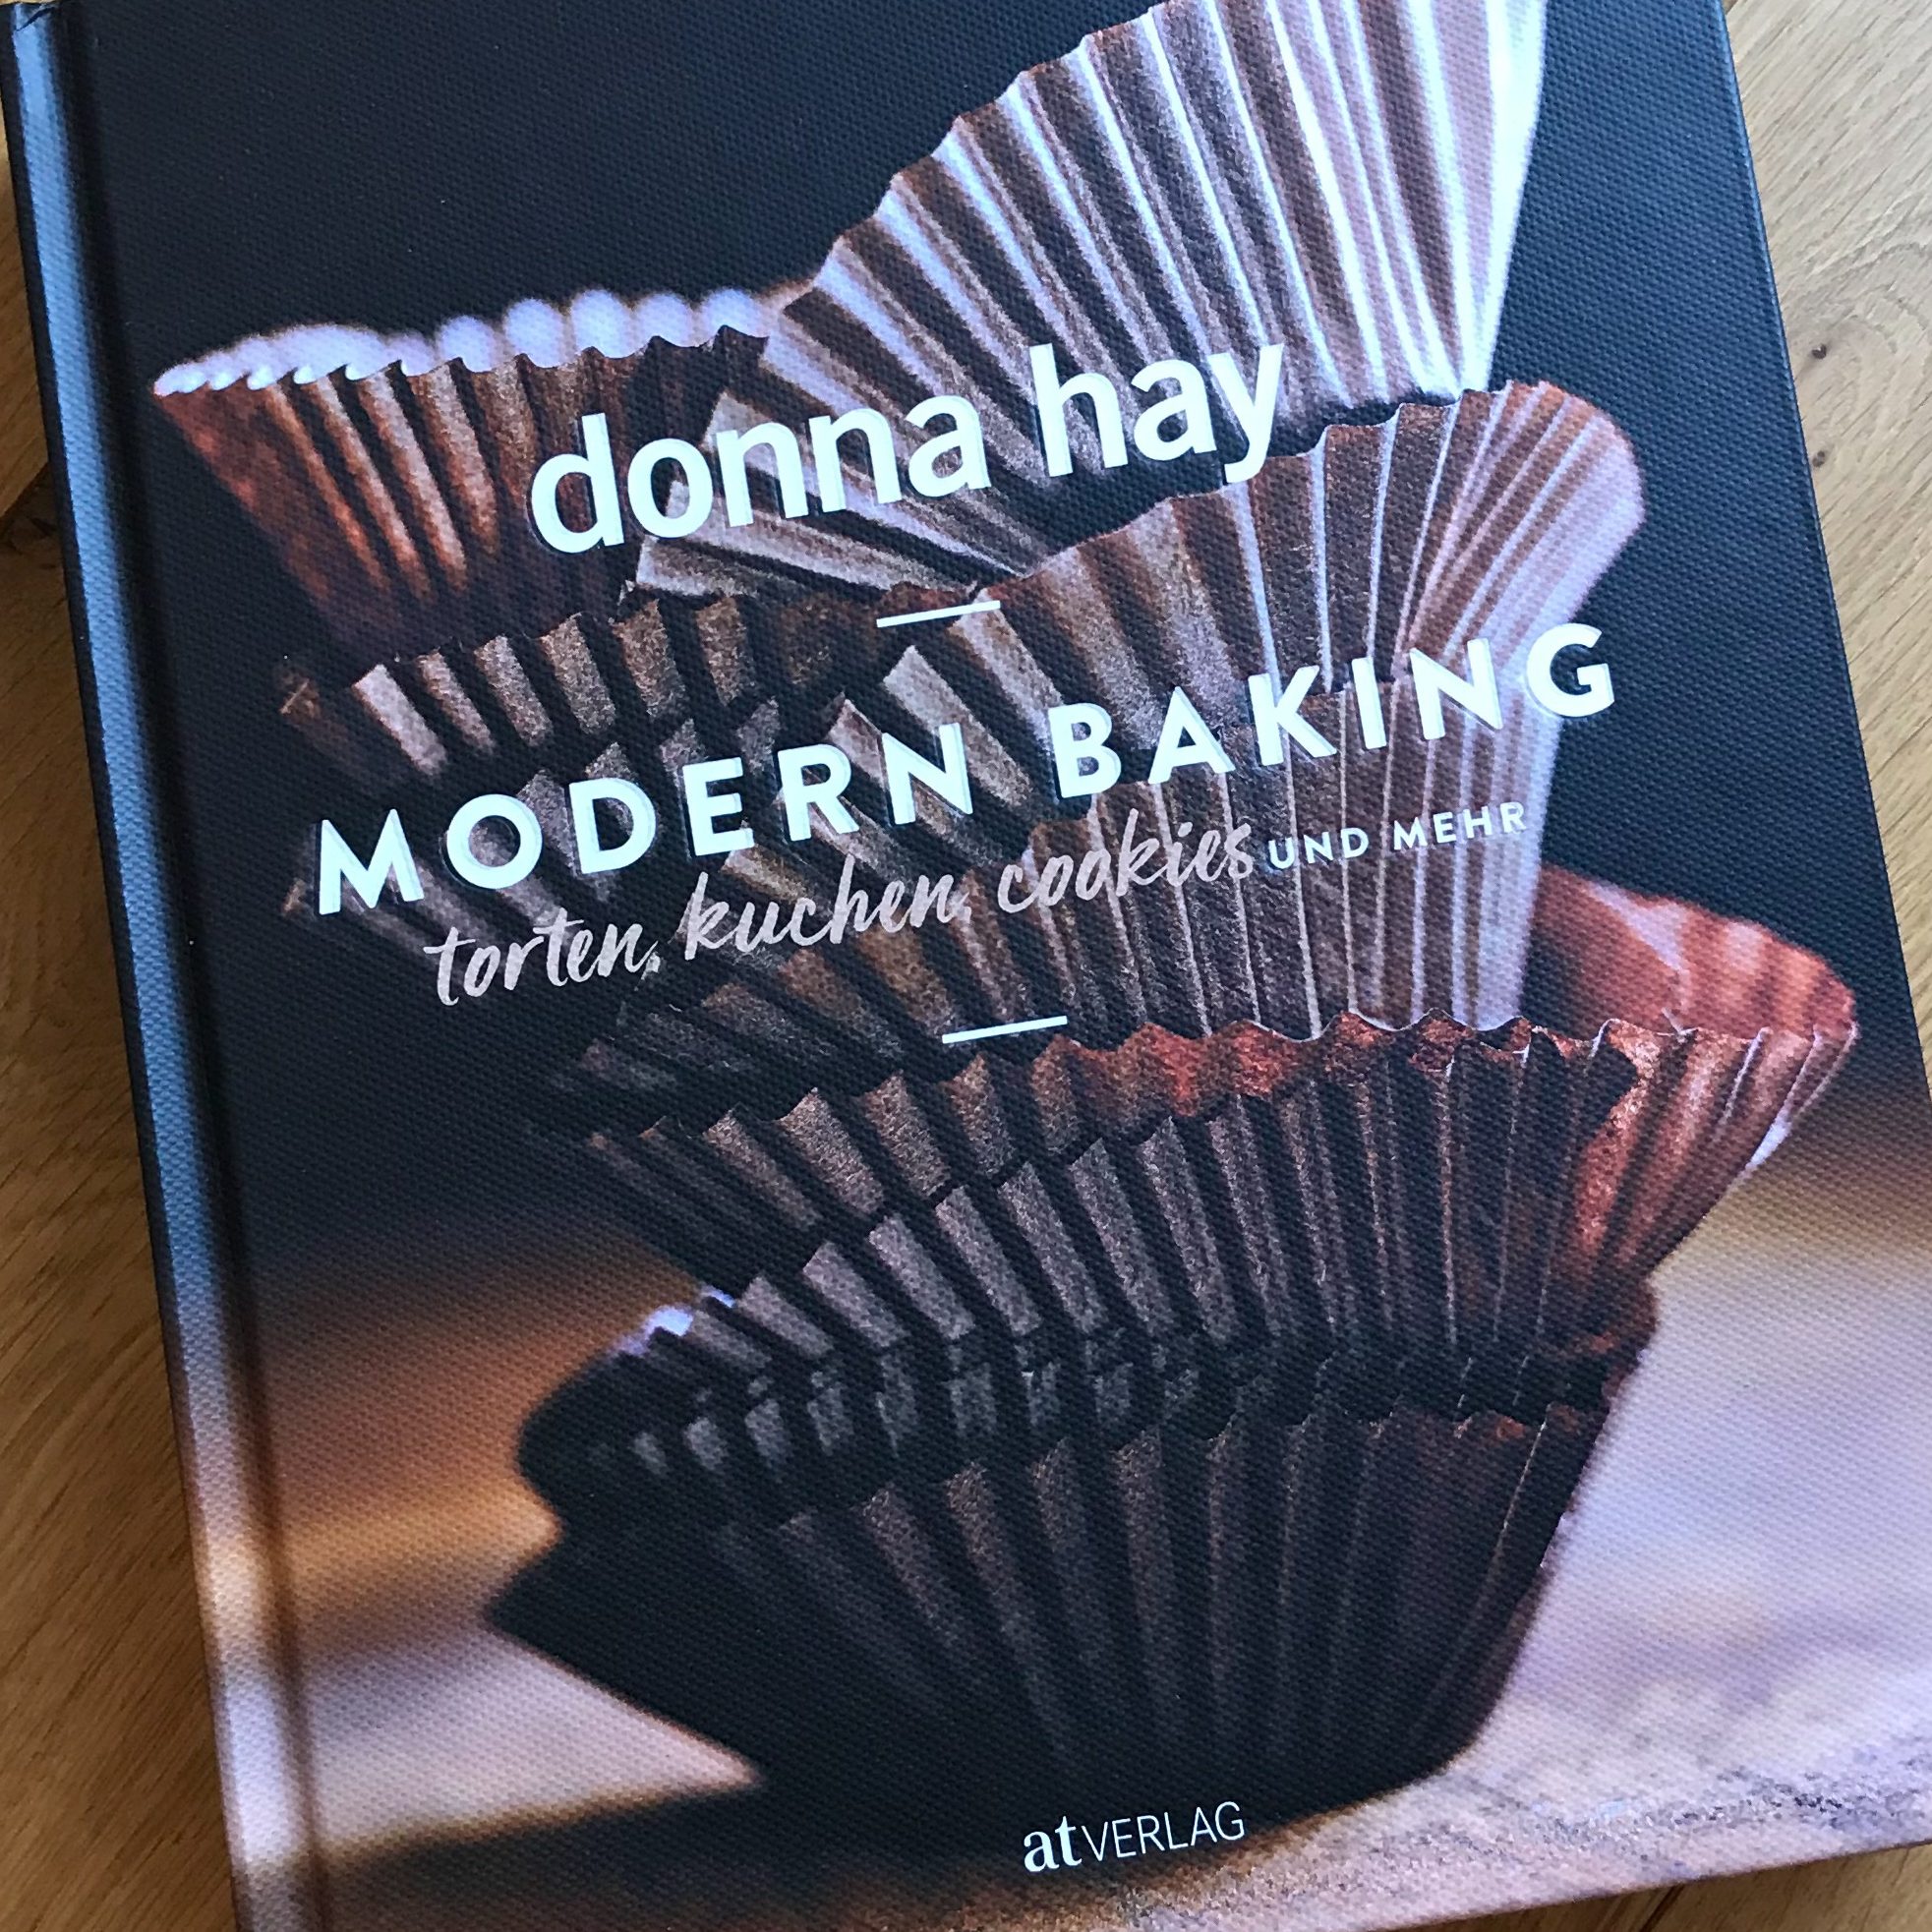 Modern Baking von Donna Hay im Test